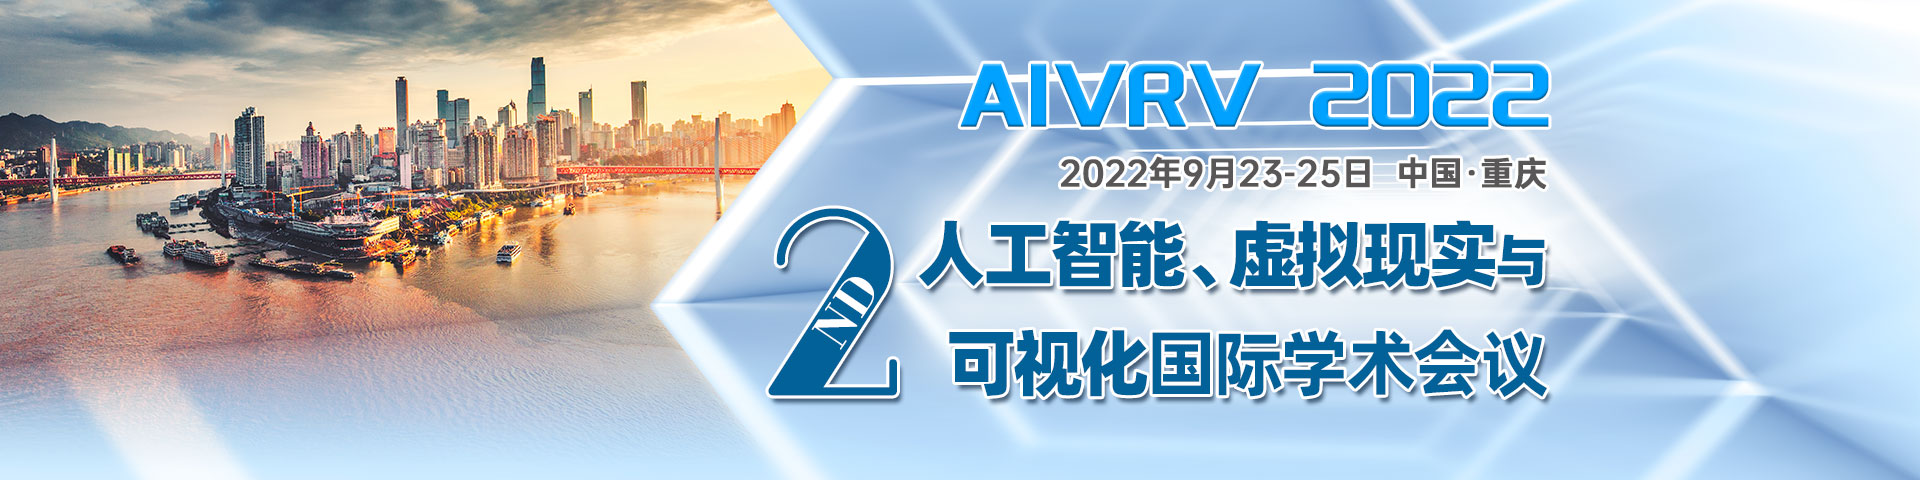 9月-重庆-AIVRV-会议官网轮播图.jpg